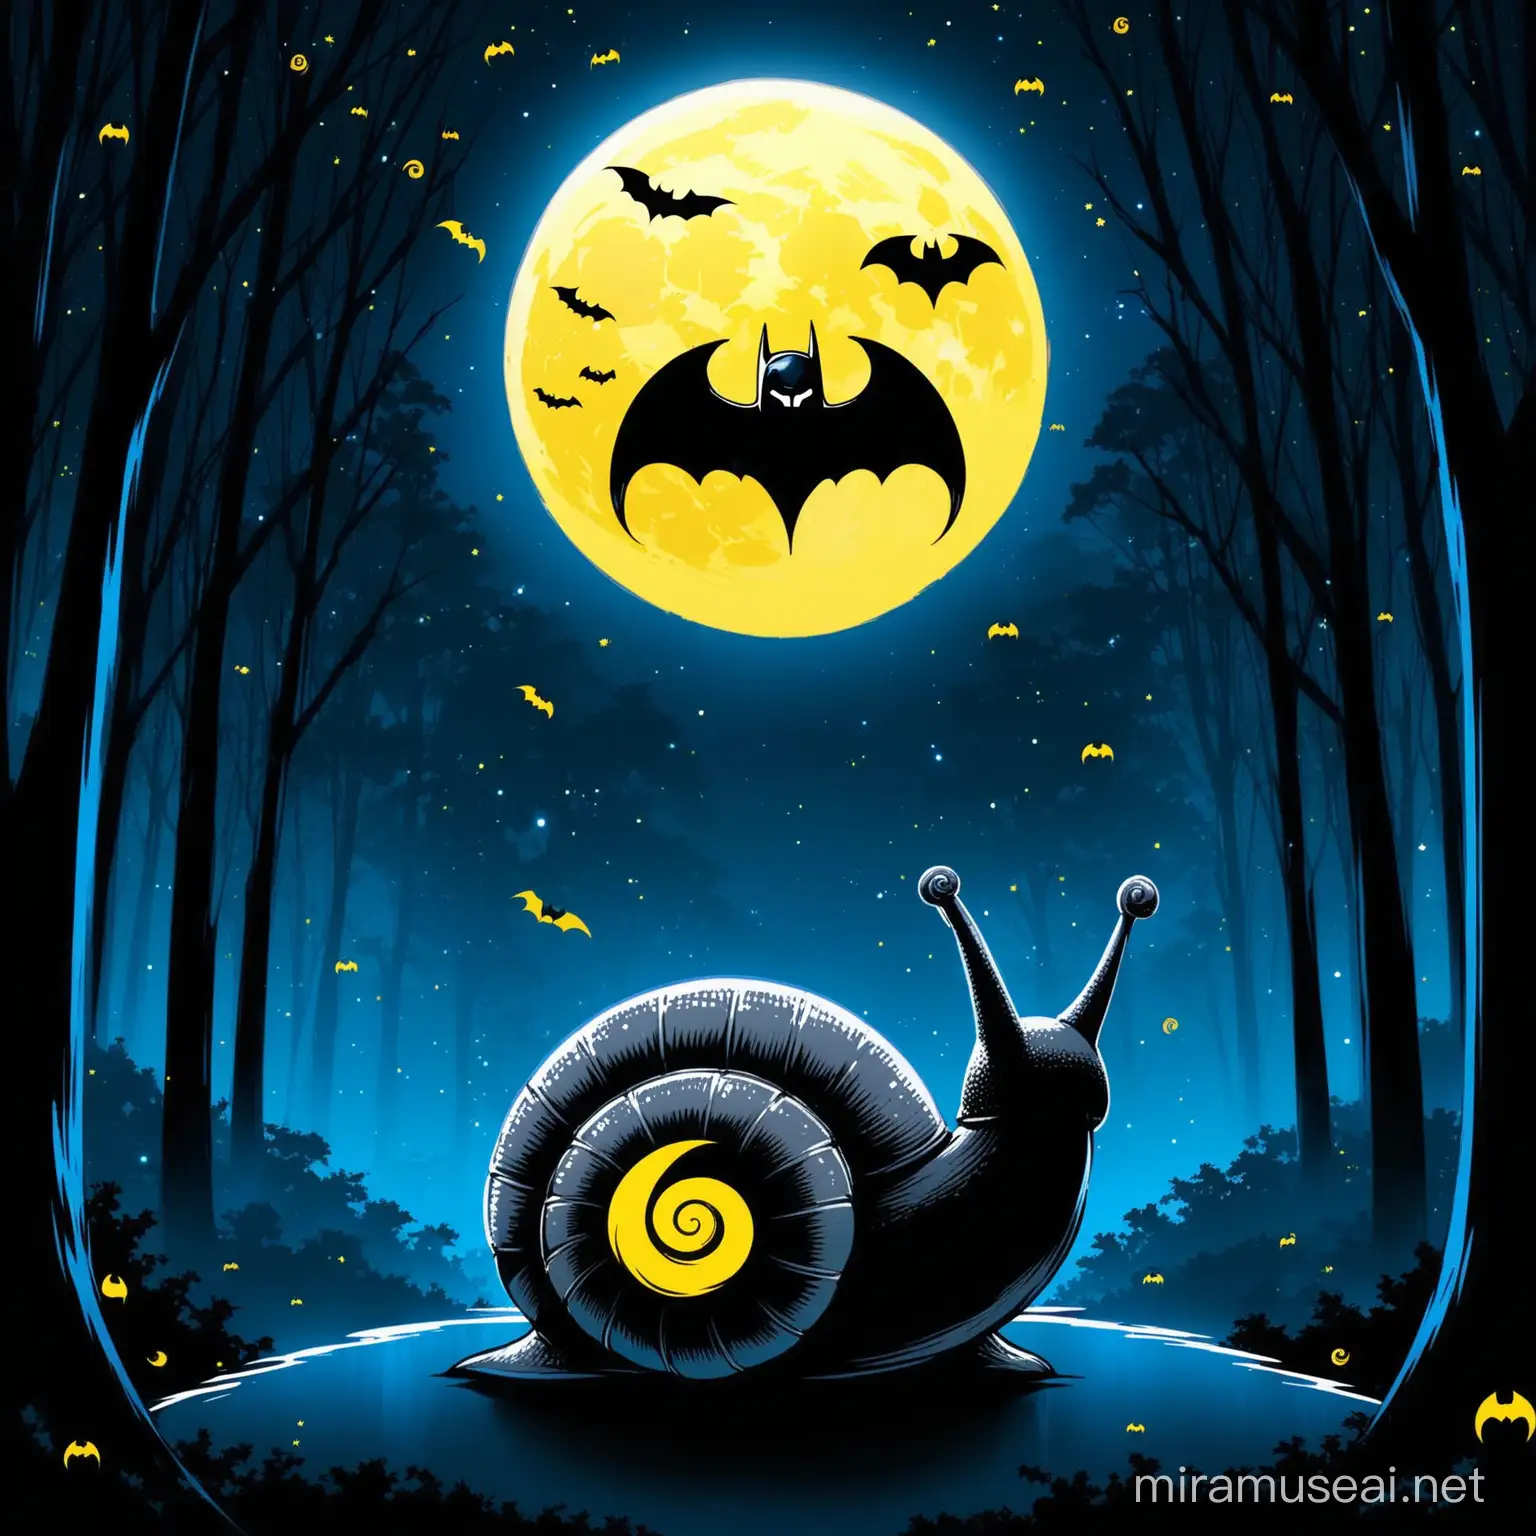 Batman Symbol Snail Mysterious Nocturnal Journey